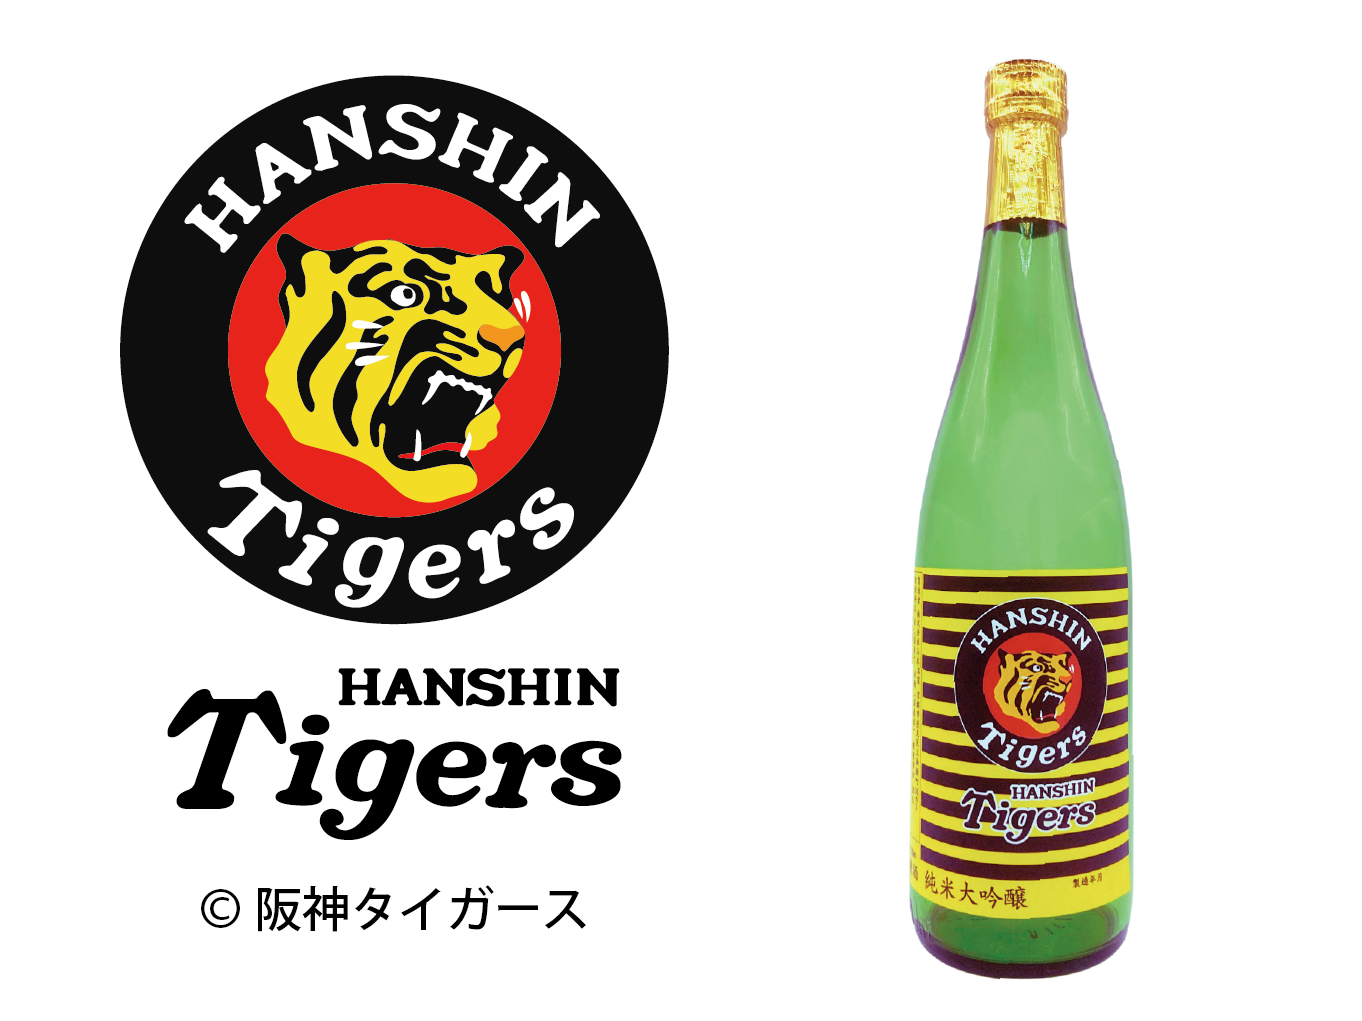 虎と酔う京の美酒、阪神タイガース球団承認の日本酒を
シーズン開幕の3月29日より発売